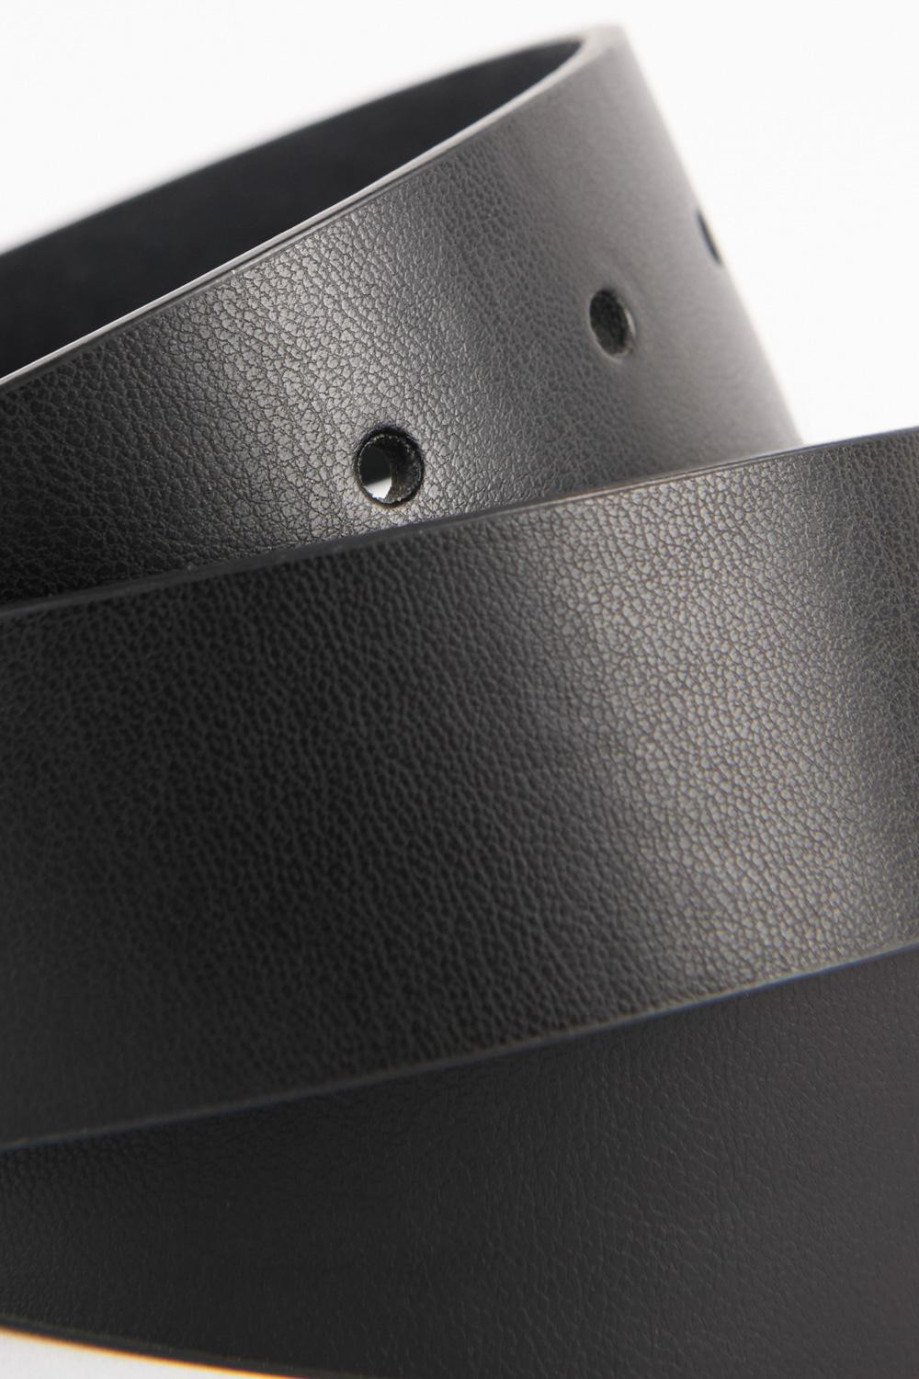 Cinturón sintético negro con hebilla metálica circular